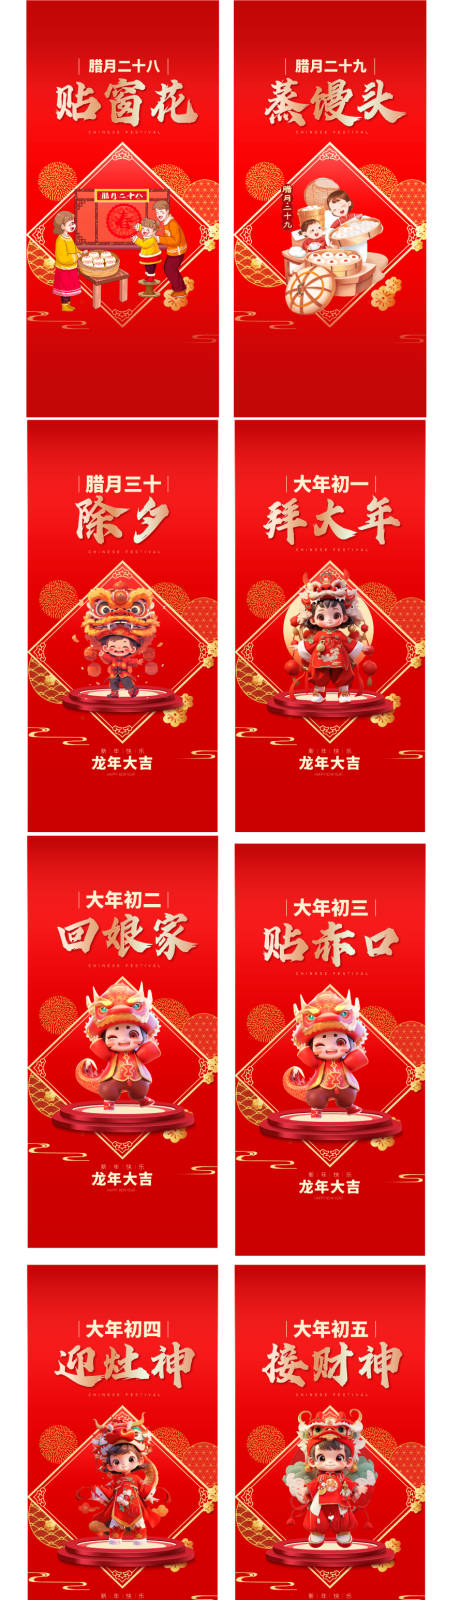 中国传统节日龙年新年初一到初七海报